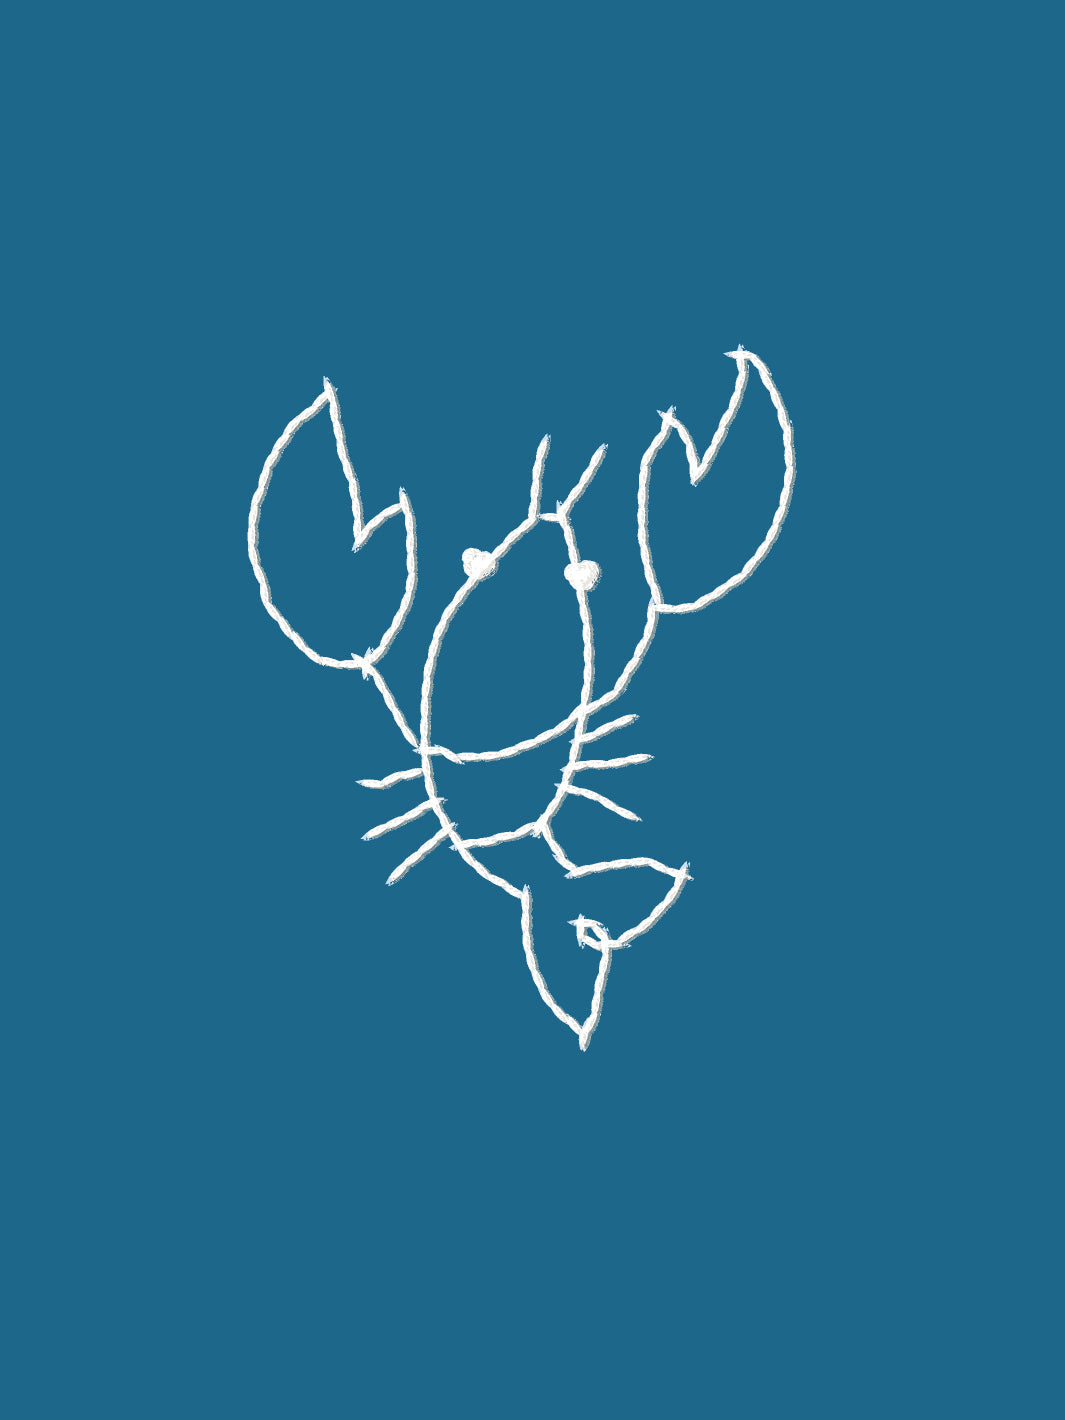 'Lobsters' Wallpaper by Lingua Franca - Cadet Blue